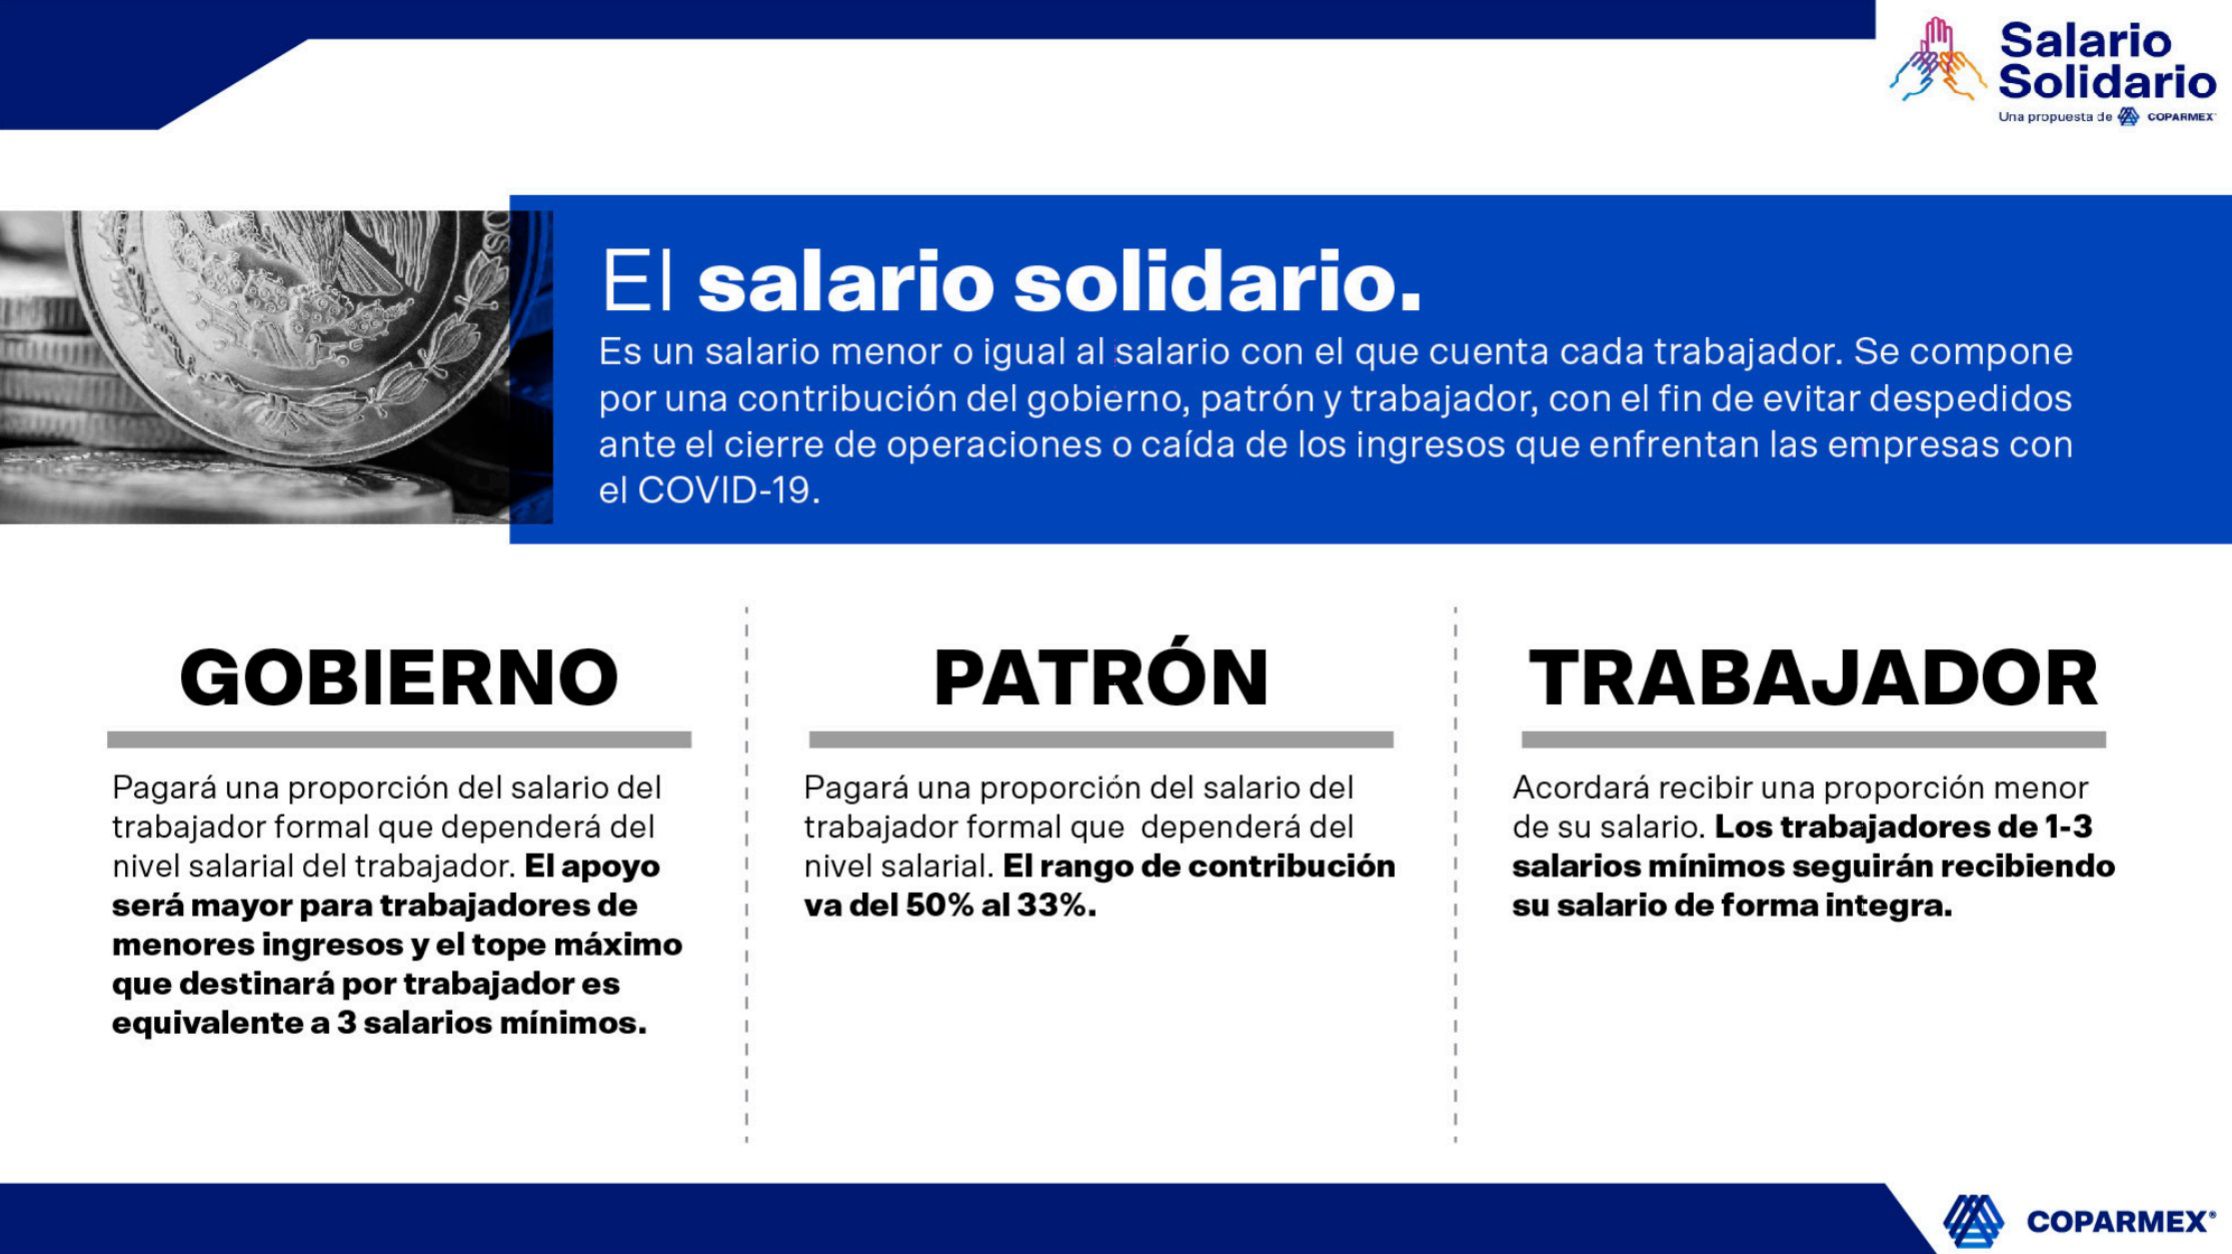 Salario Solidario promovido por Coparmex ante crisis por COVID-19 (Foto: Cortesía Coparmex)